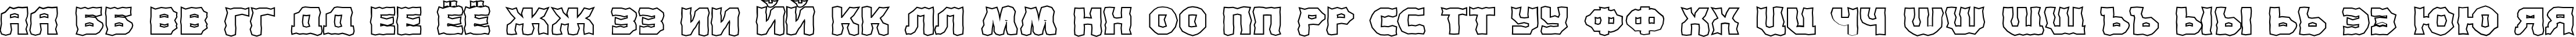 Пример написания русского алфавита шрифтом a_ConceptoTitulBrOtl